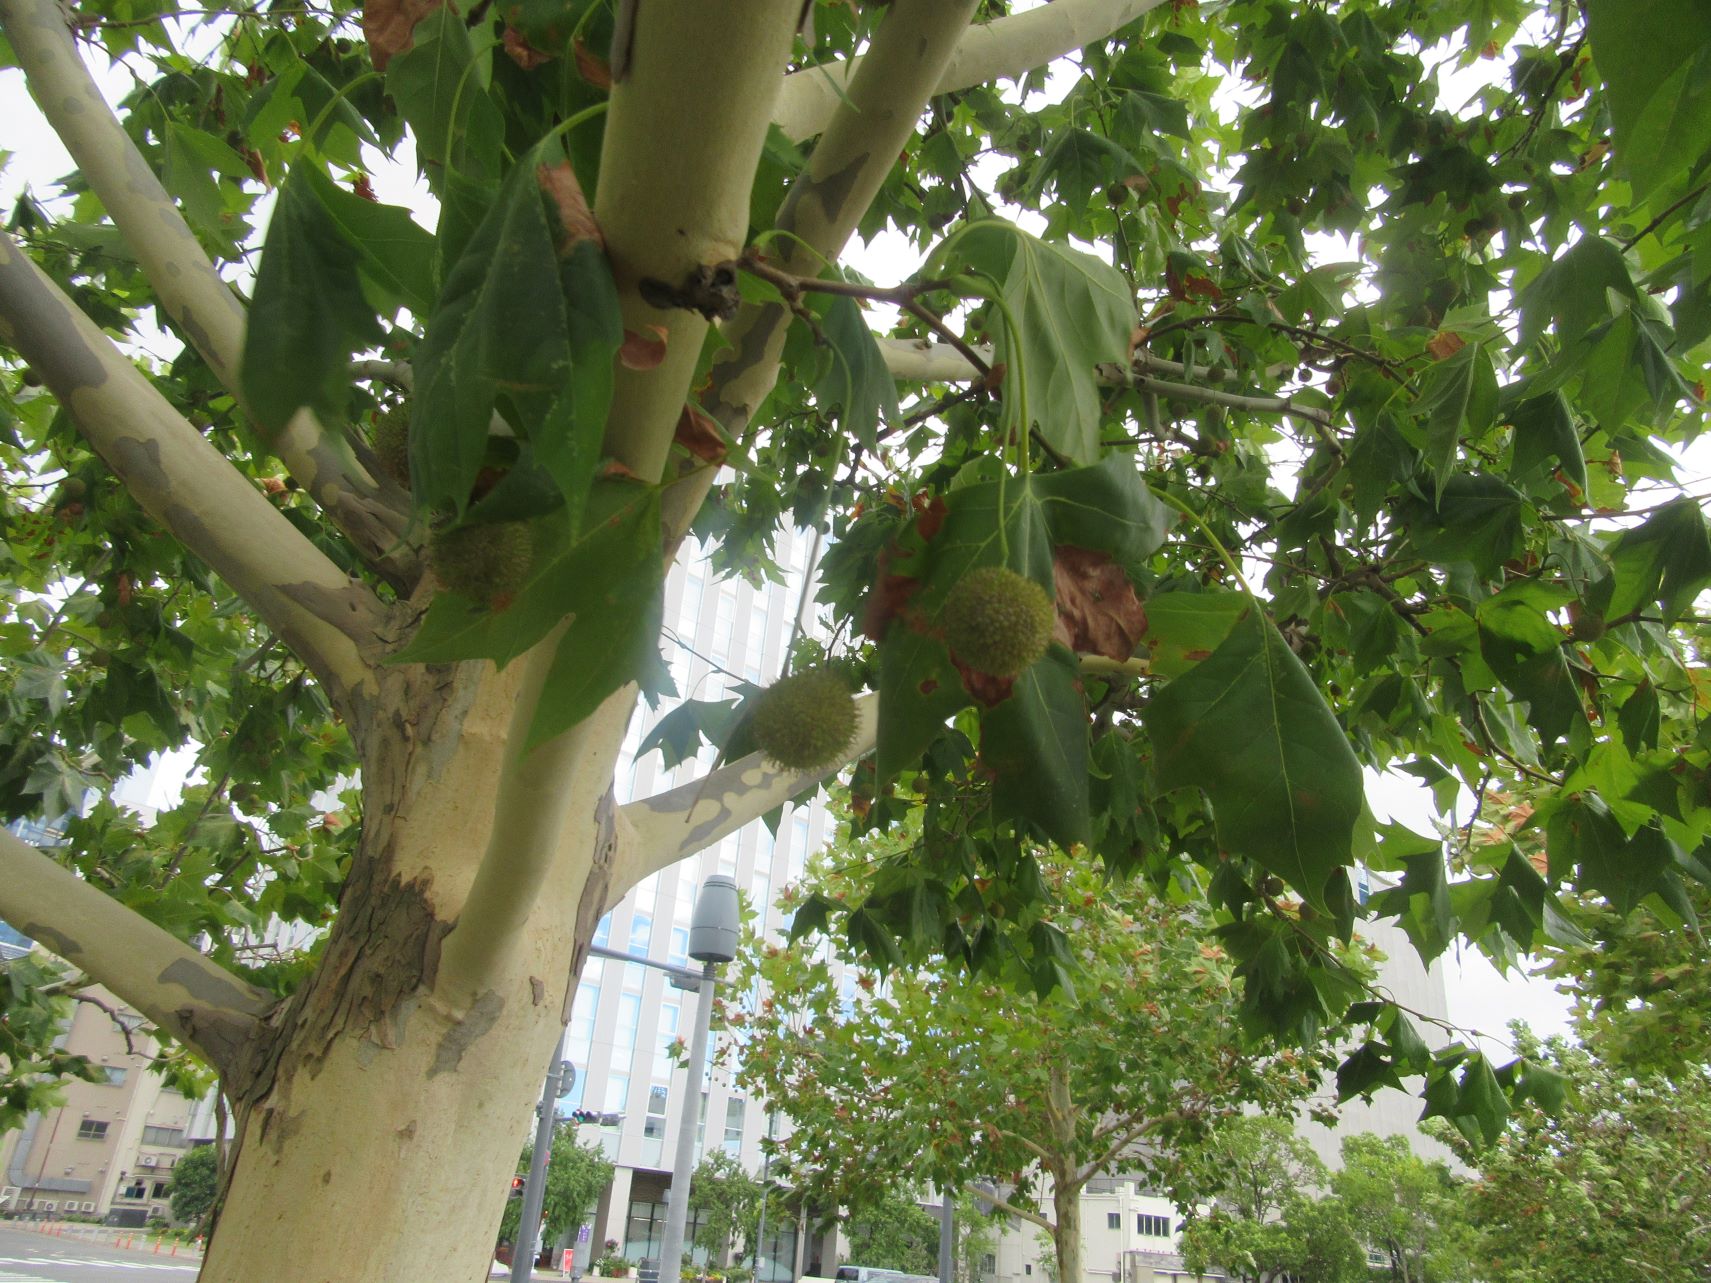 2023年9月5日撮影の、長崎市のプラタナス広場のプラタナスの木に生えている実。